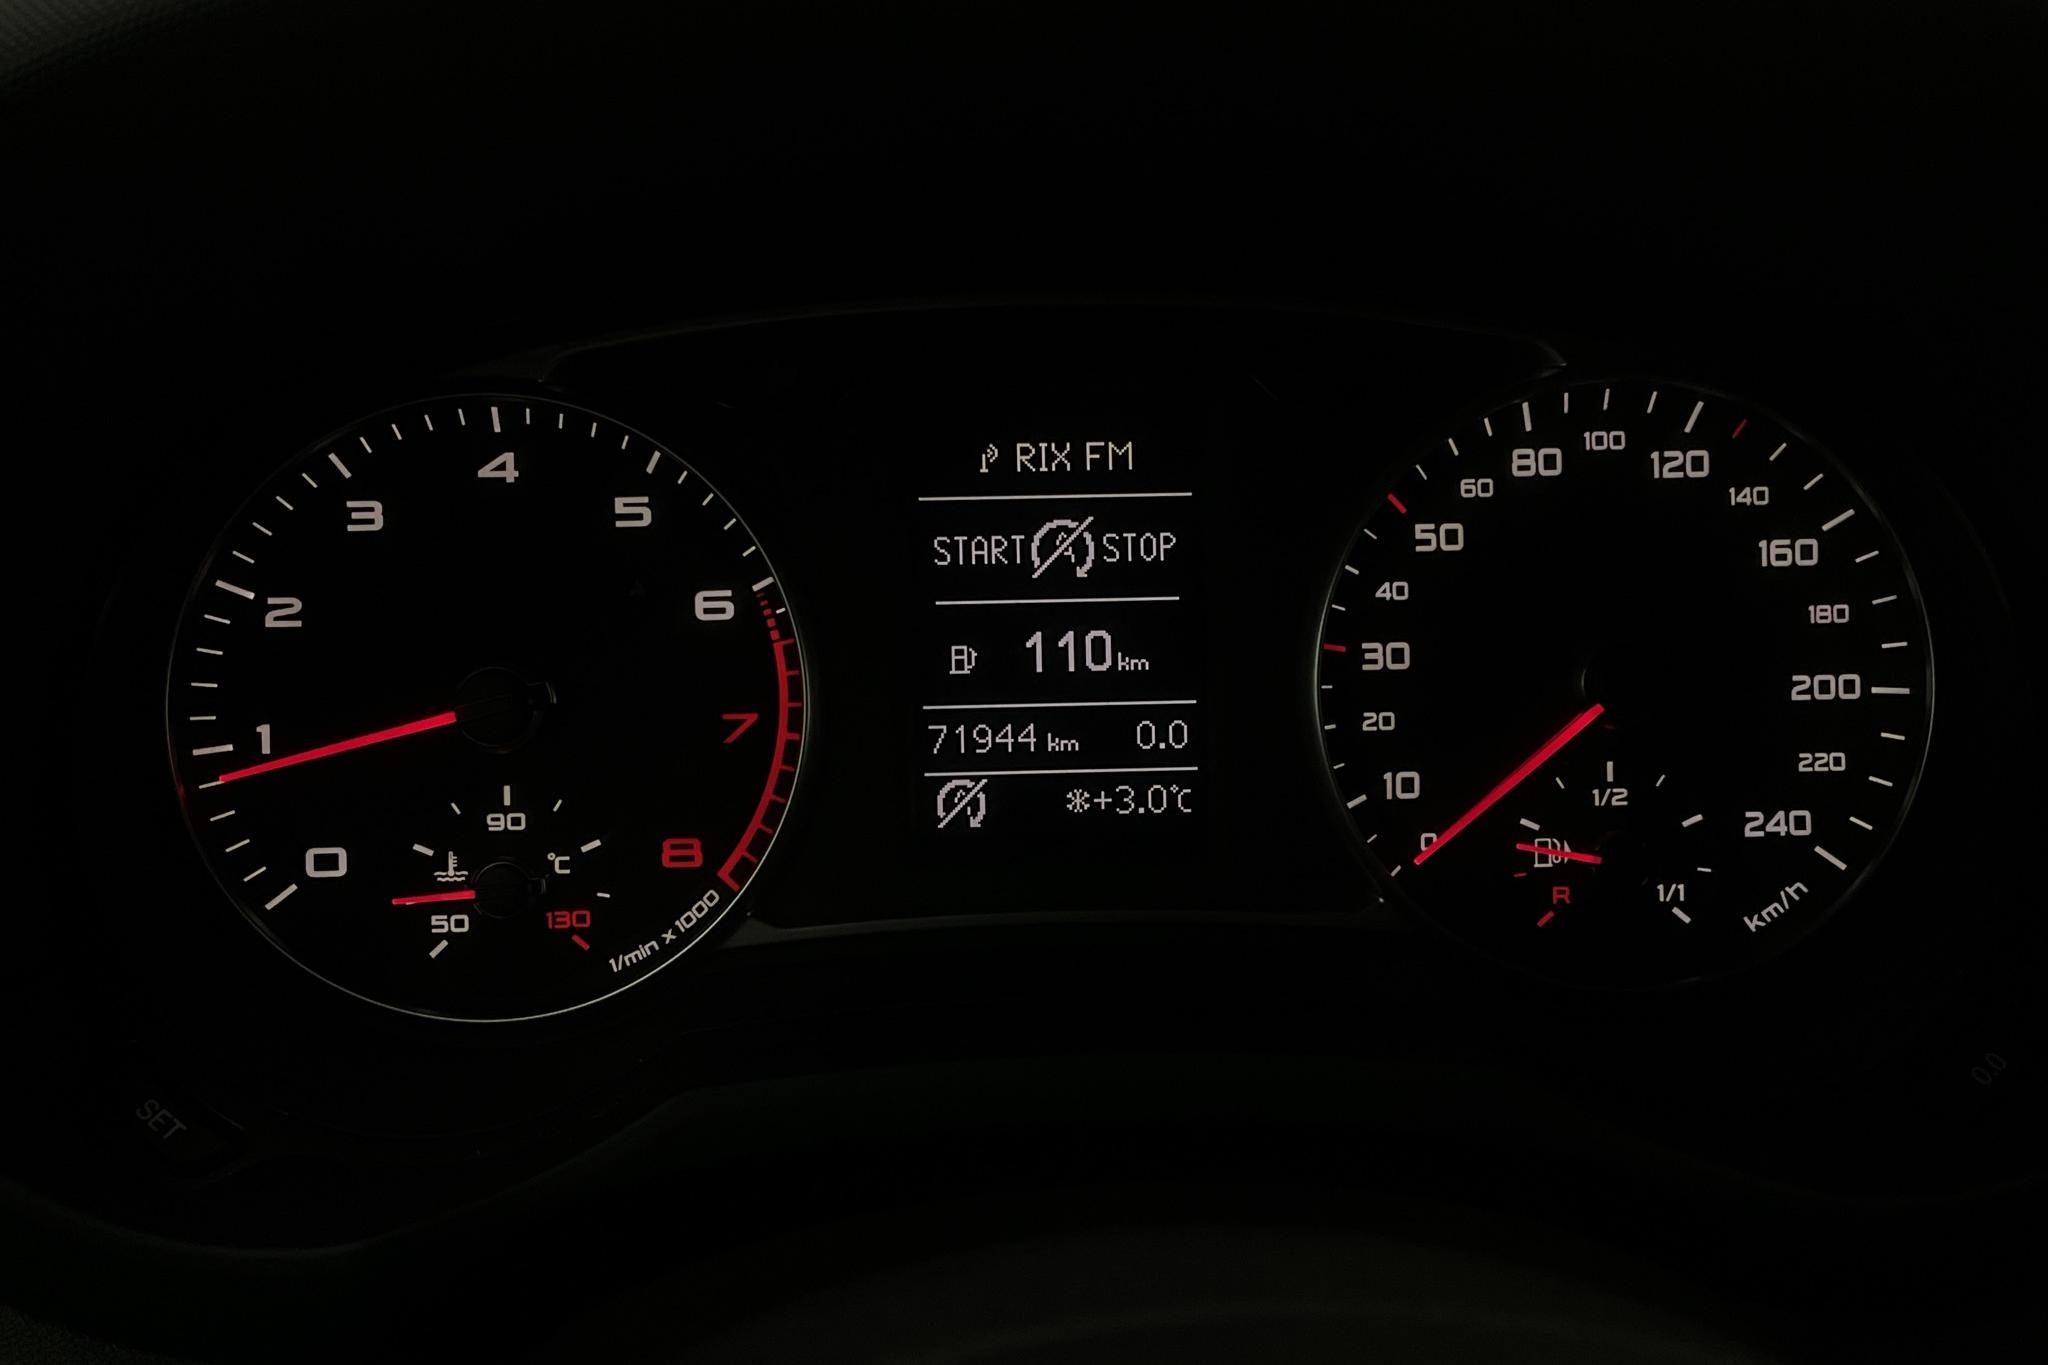 Audi A1 1.2 TFSI (86hk) - 7 194 mil - Manuell - röd - 2011